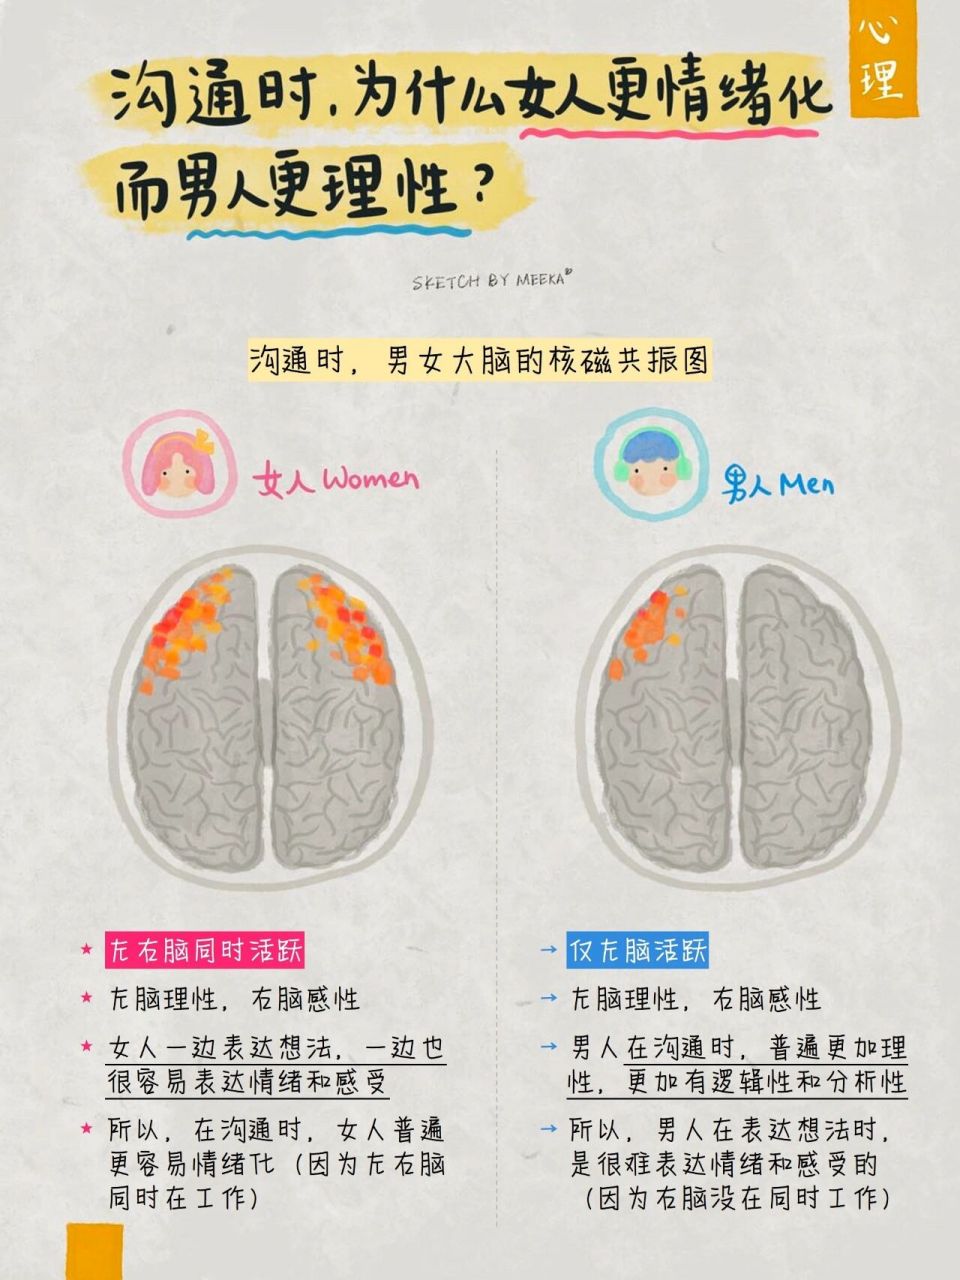 男女大脑思维的巨大差异 71沟通时为什么女人更情绪化,而男人 